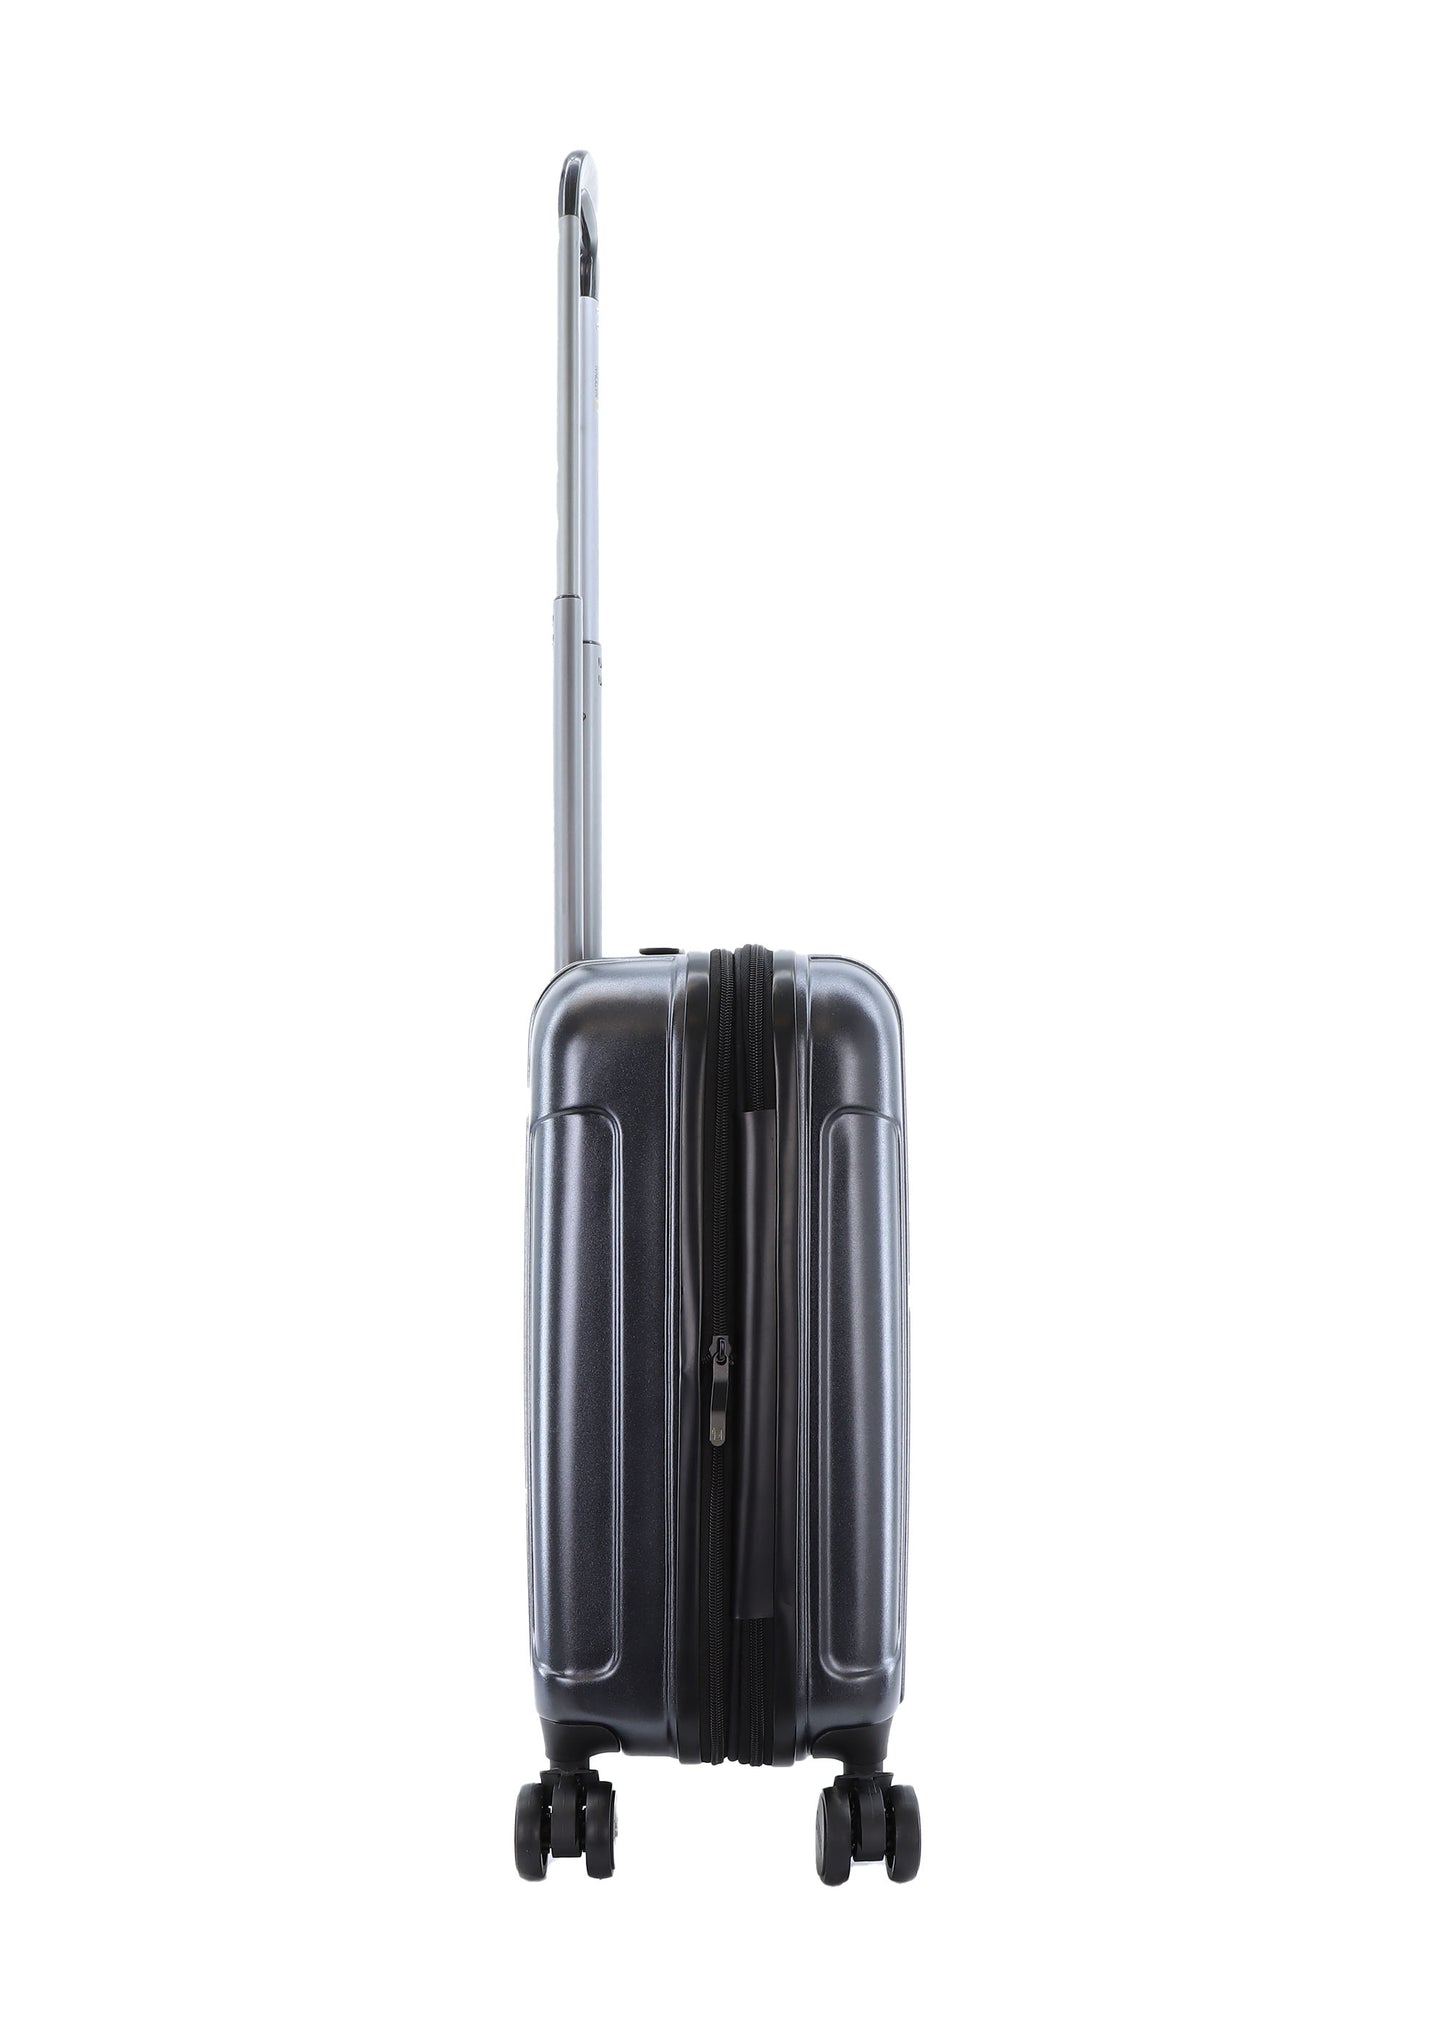 Valise rigide pour bagage à main National Geographic / Trolley / Valise de voyage - 55 cm (Petite) - Transit - Bleu marine